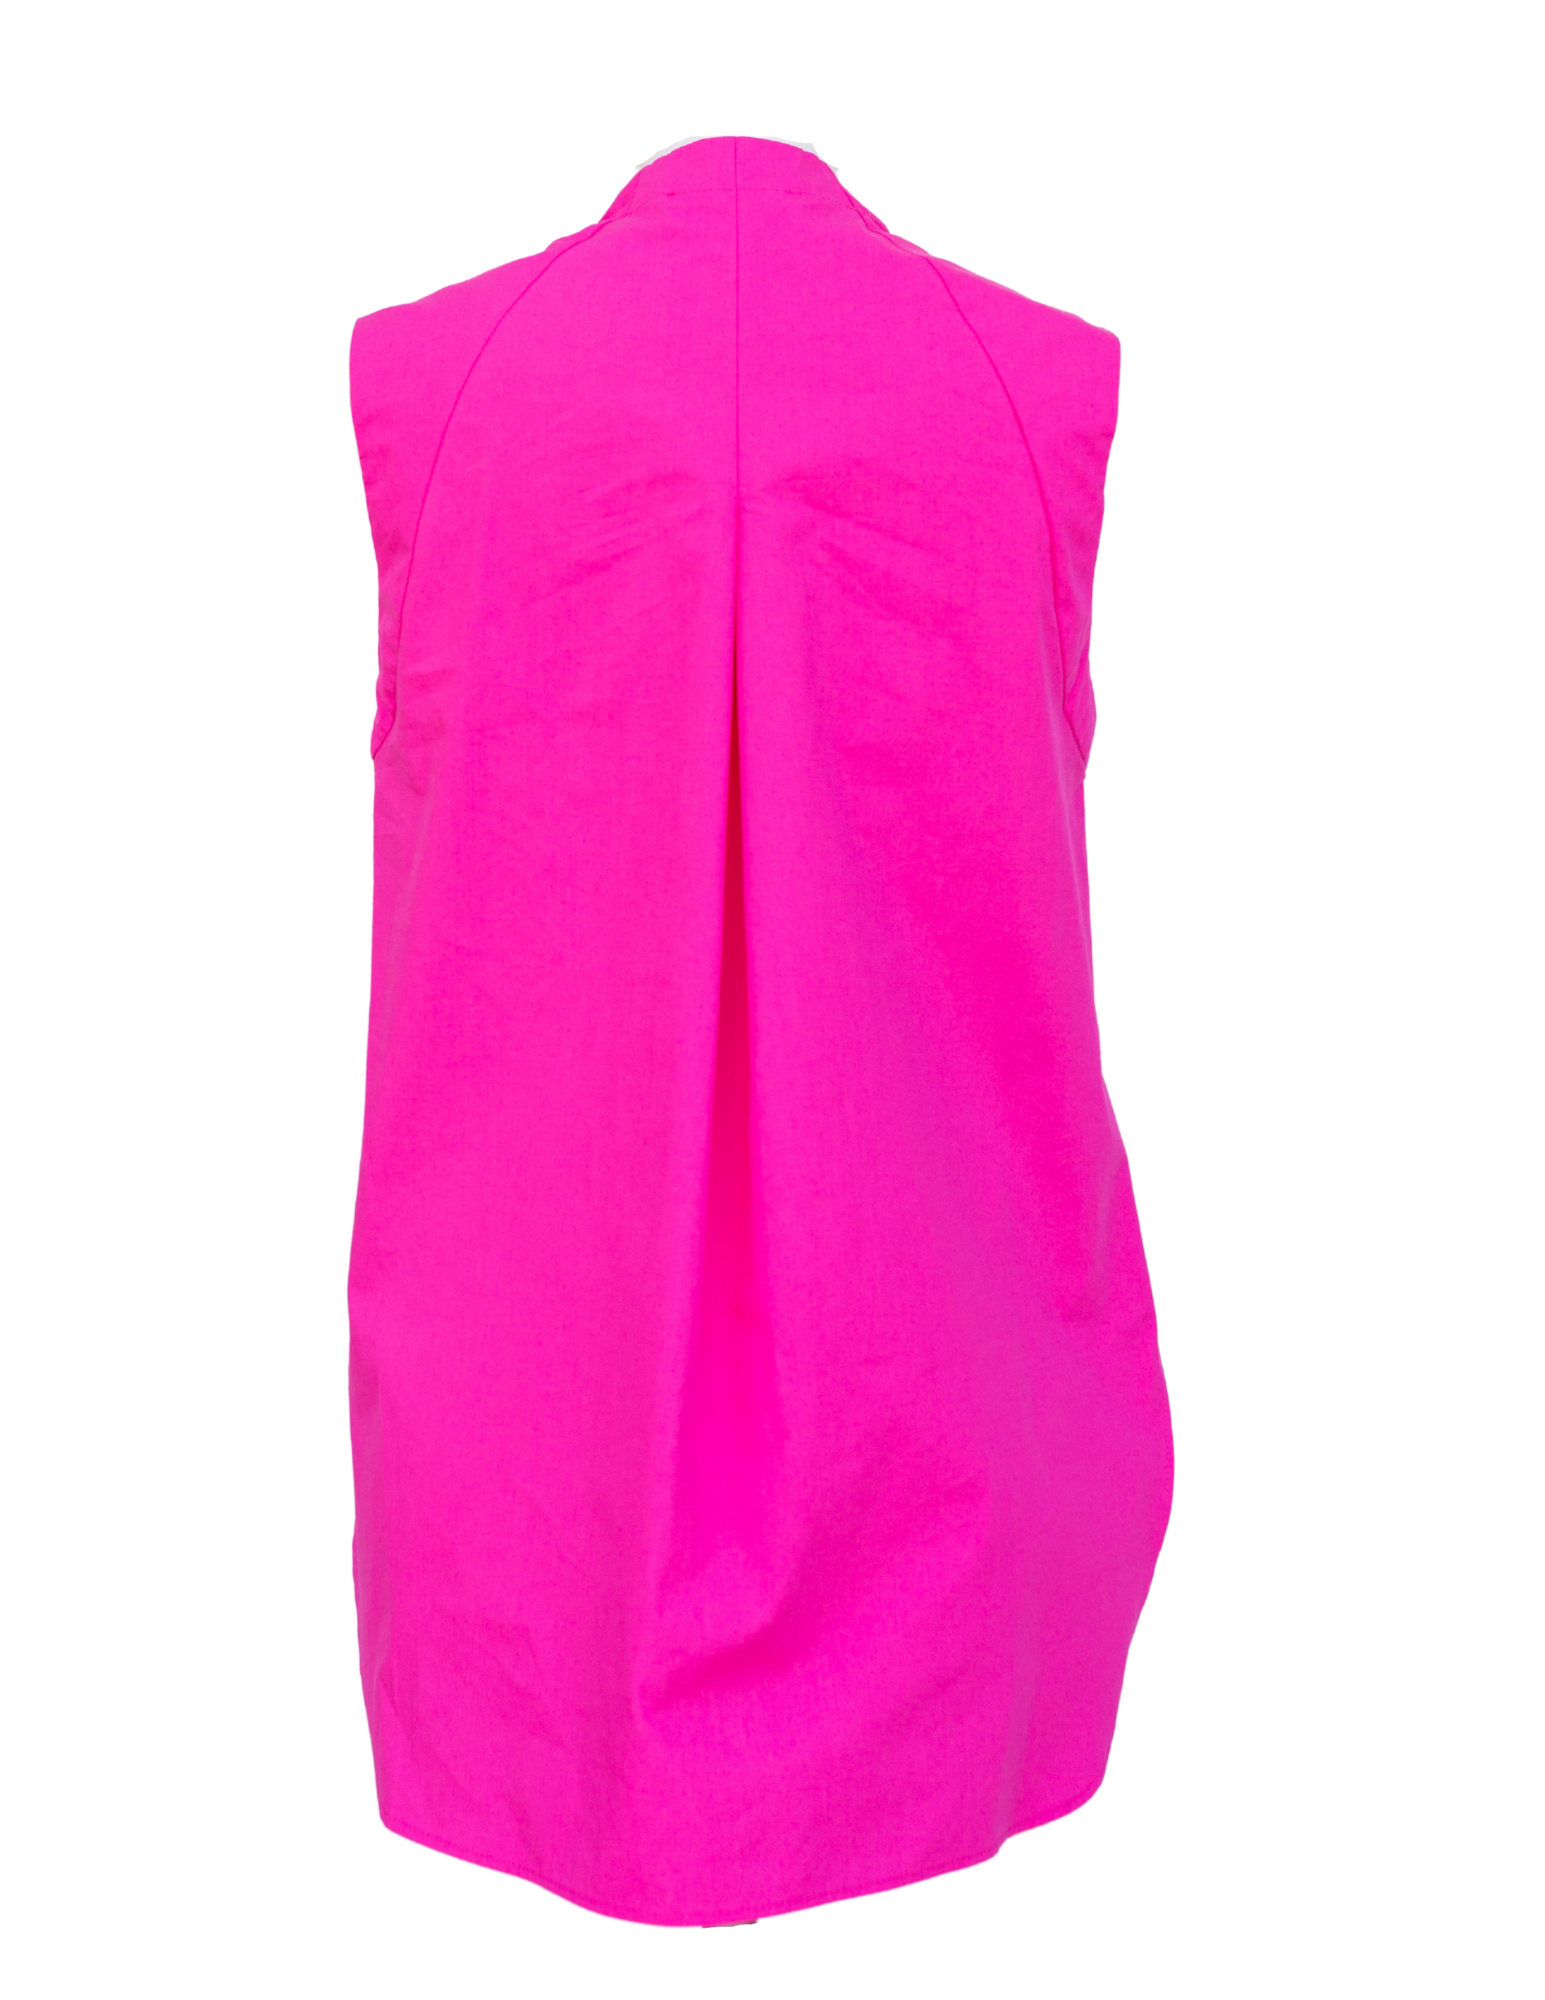 Sleeveless Shirt - Hot Pink